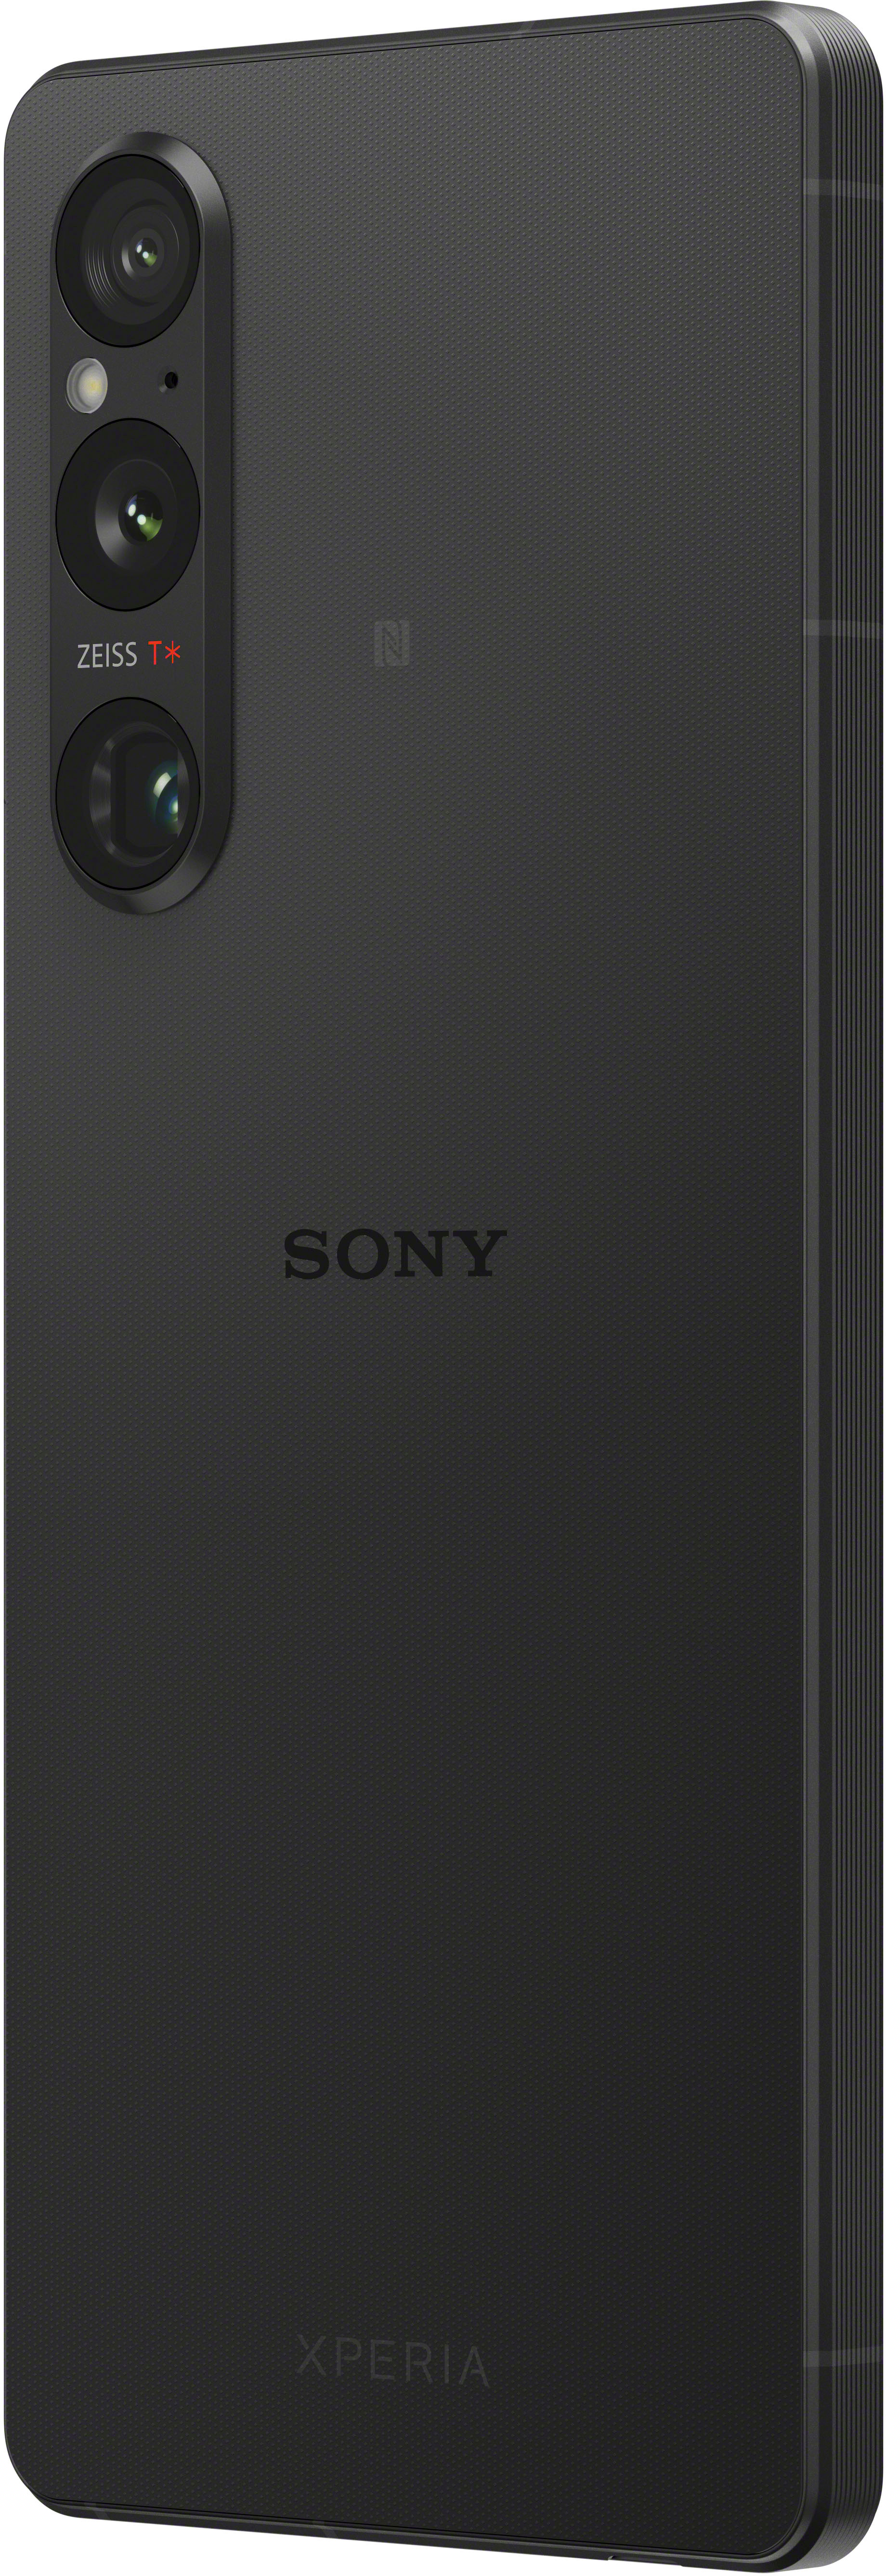 Xperia (Unlocked) 256GB Black Best 5G XQDQ62/B Sony Buy 1 V -